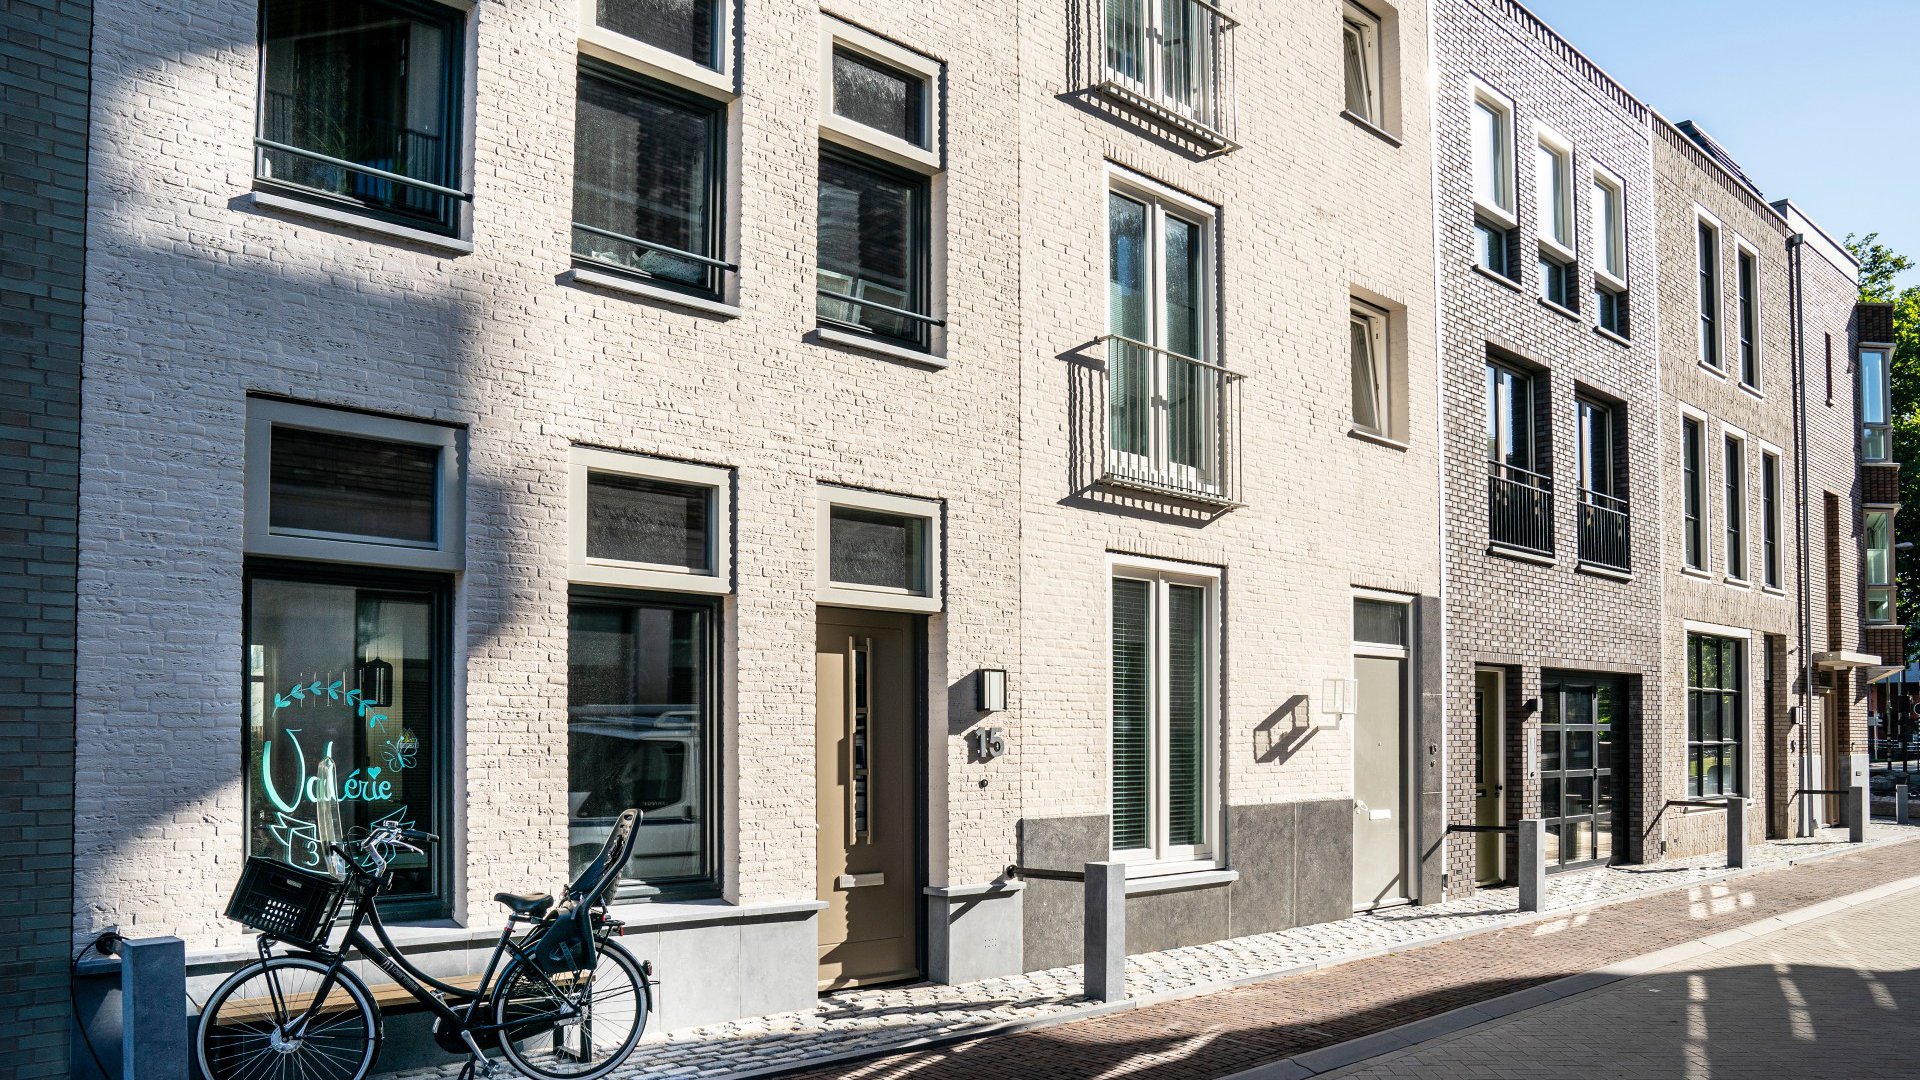 Gasthuiskwartier GZG Den Bosch transformatie Heijmans augustus 2020 1.jpg